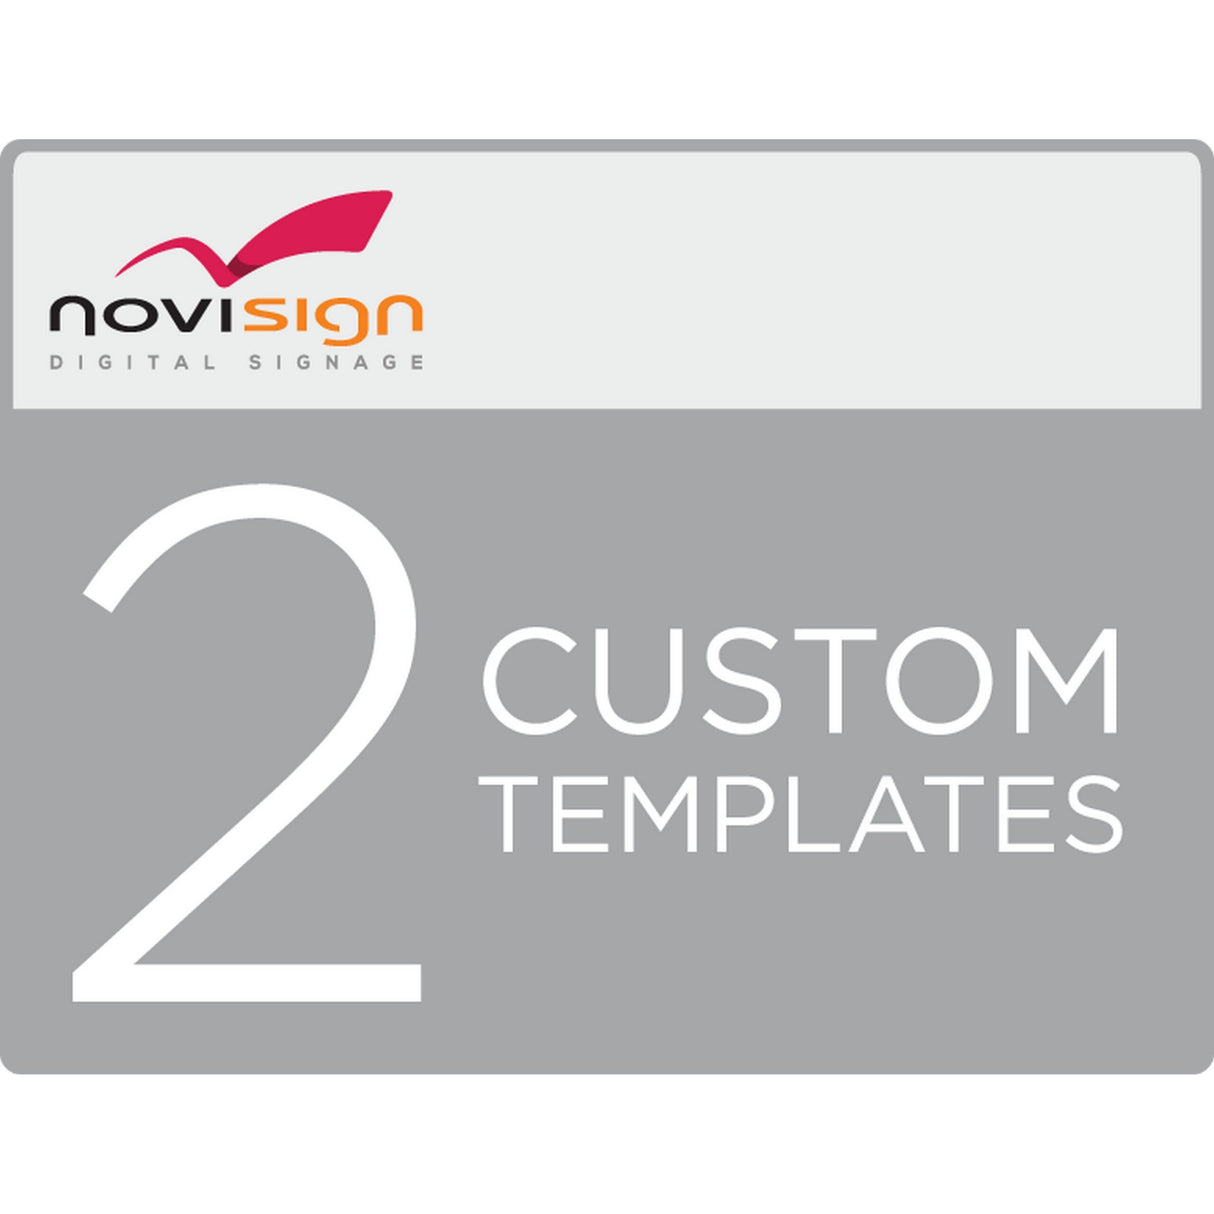 NoviSign 2 Customized Digital Signage Templates